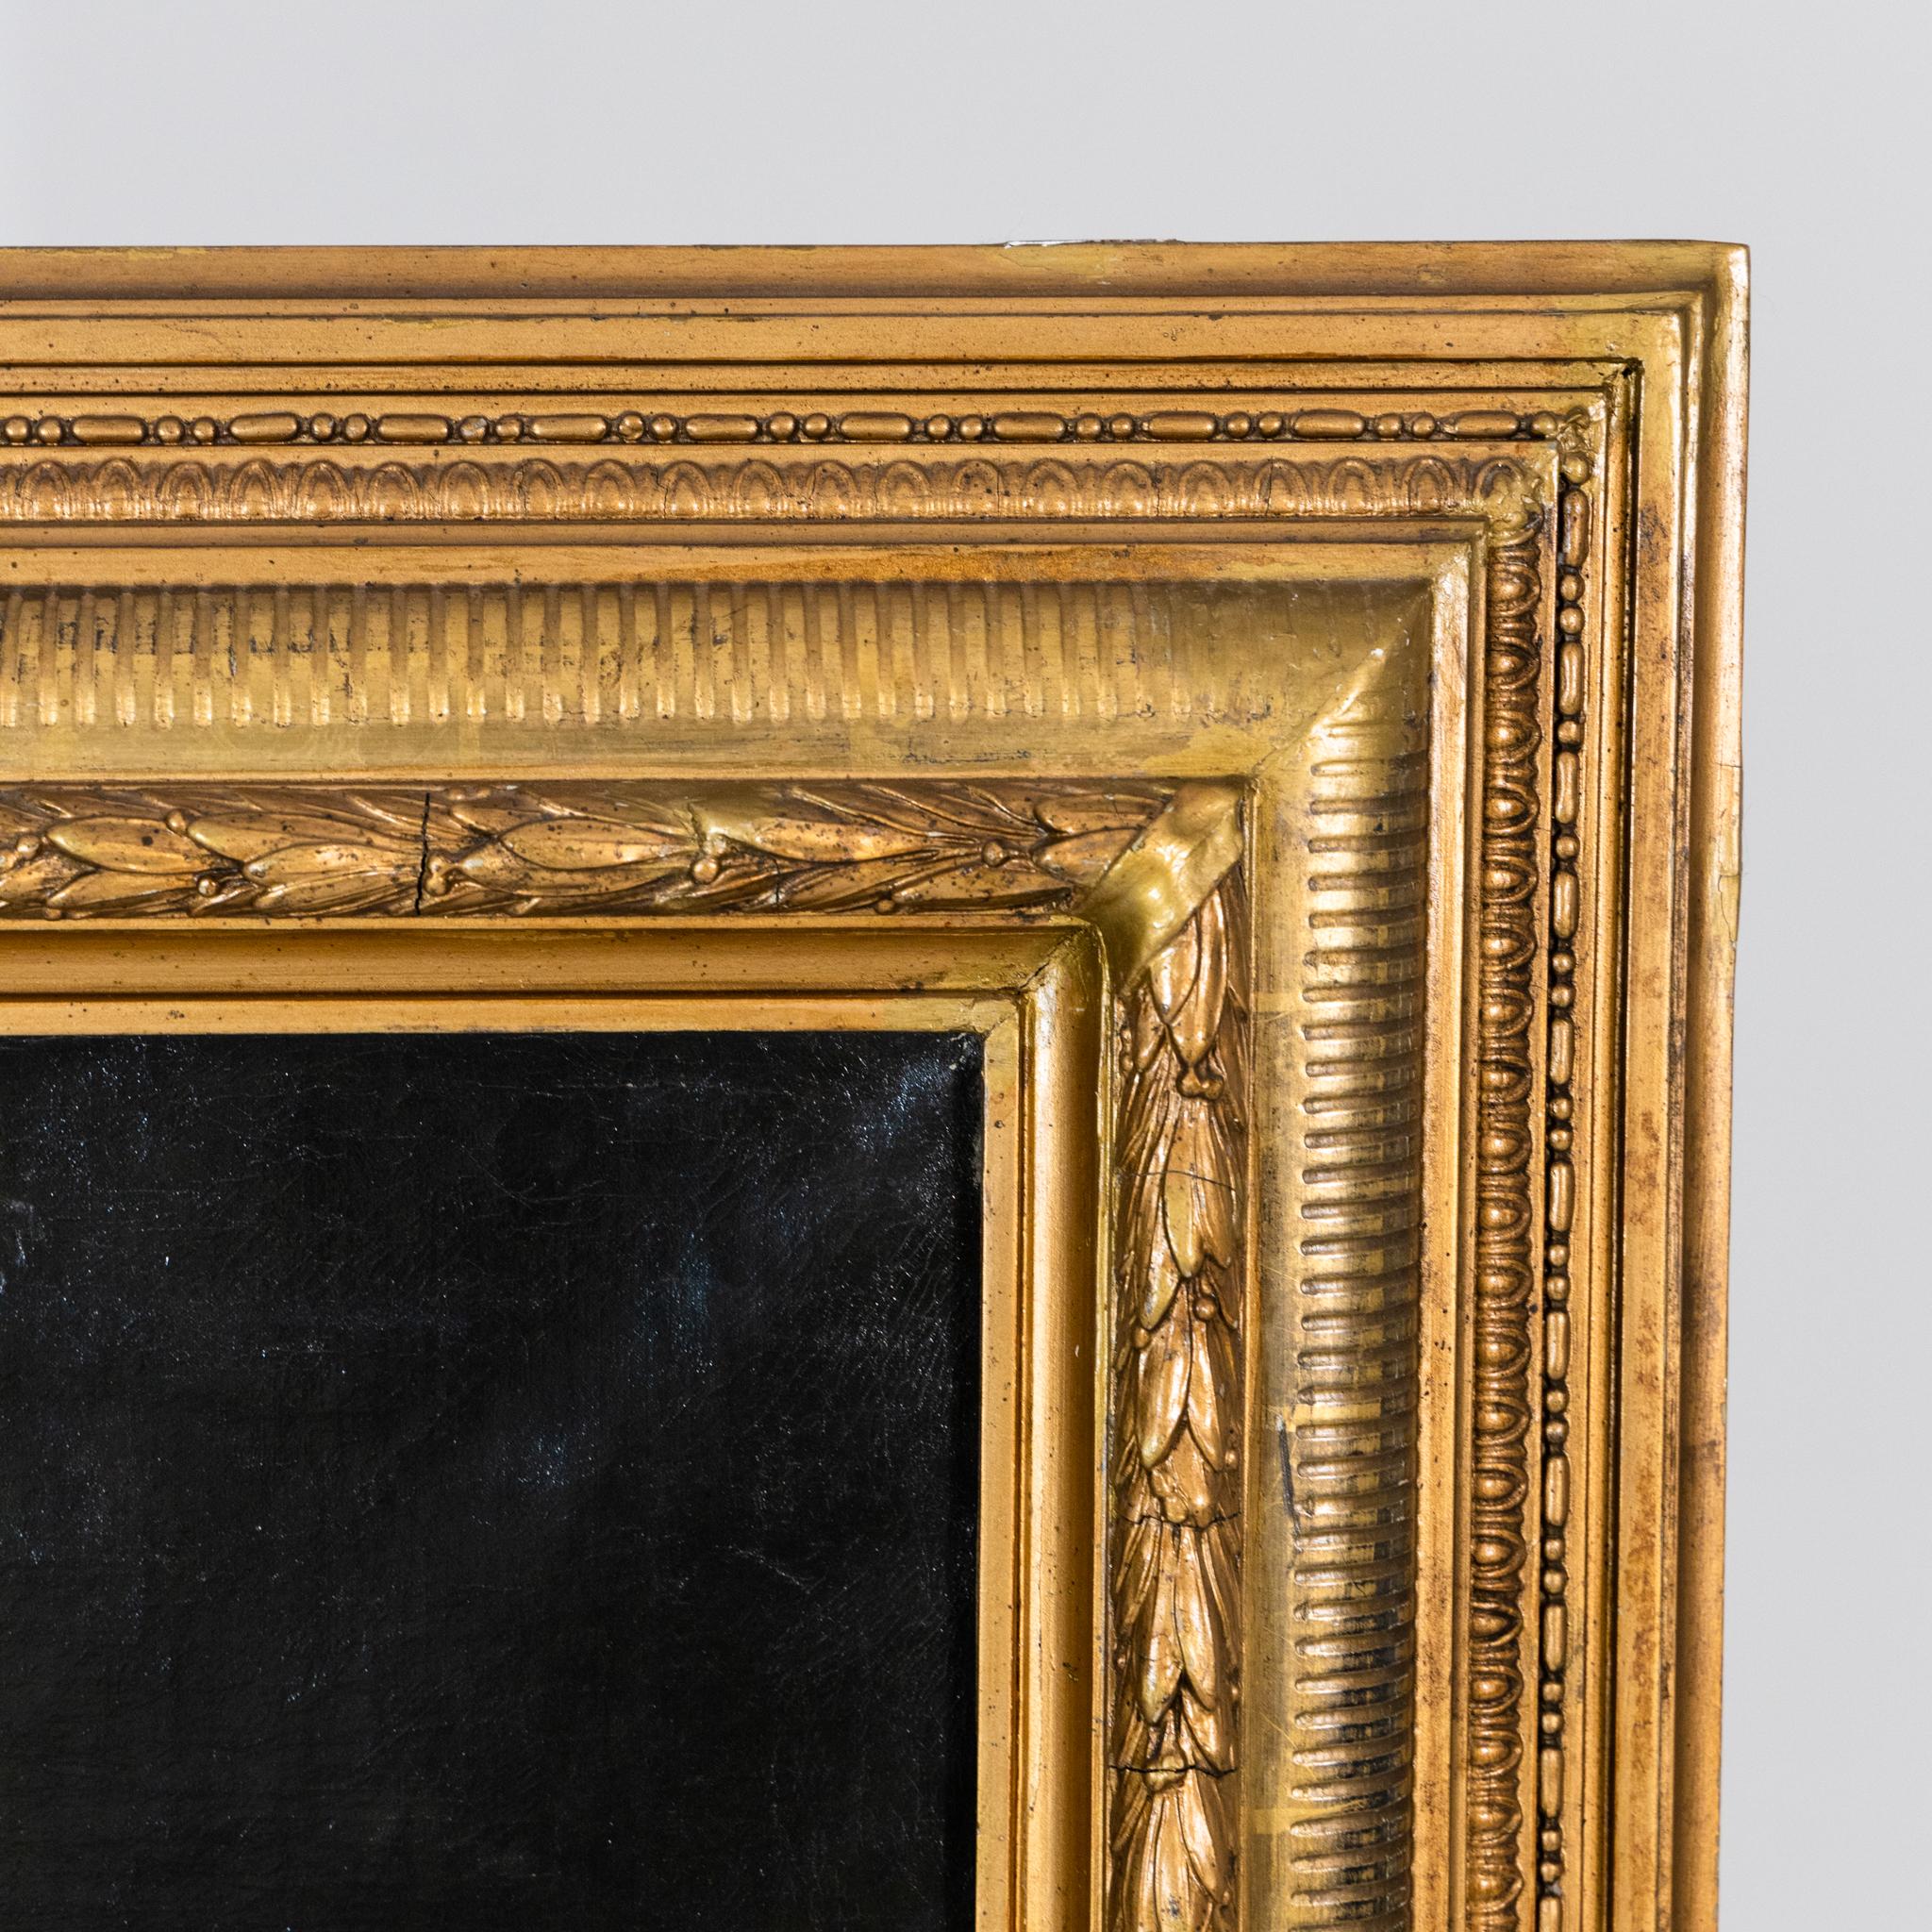 Représentation d'un nu masculin dans un décor architectural diffus. Signé en bas à droite (Paul) Anton Kaulbach (1864 Hannover - 1930 Berlin).
Huile sur toile, dans un cadre patiné d'or. Taille de l'image : 99 x 62,5 cm